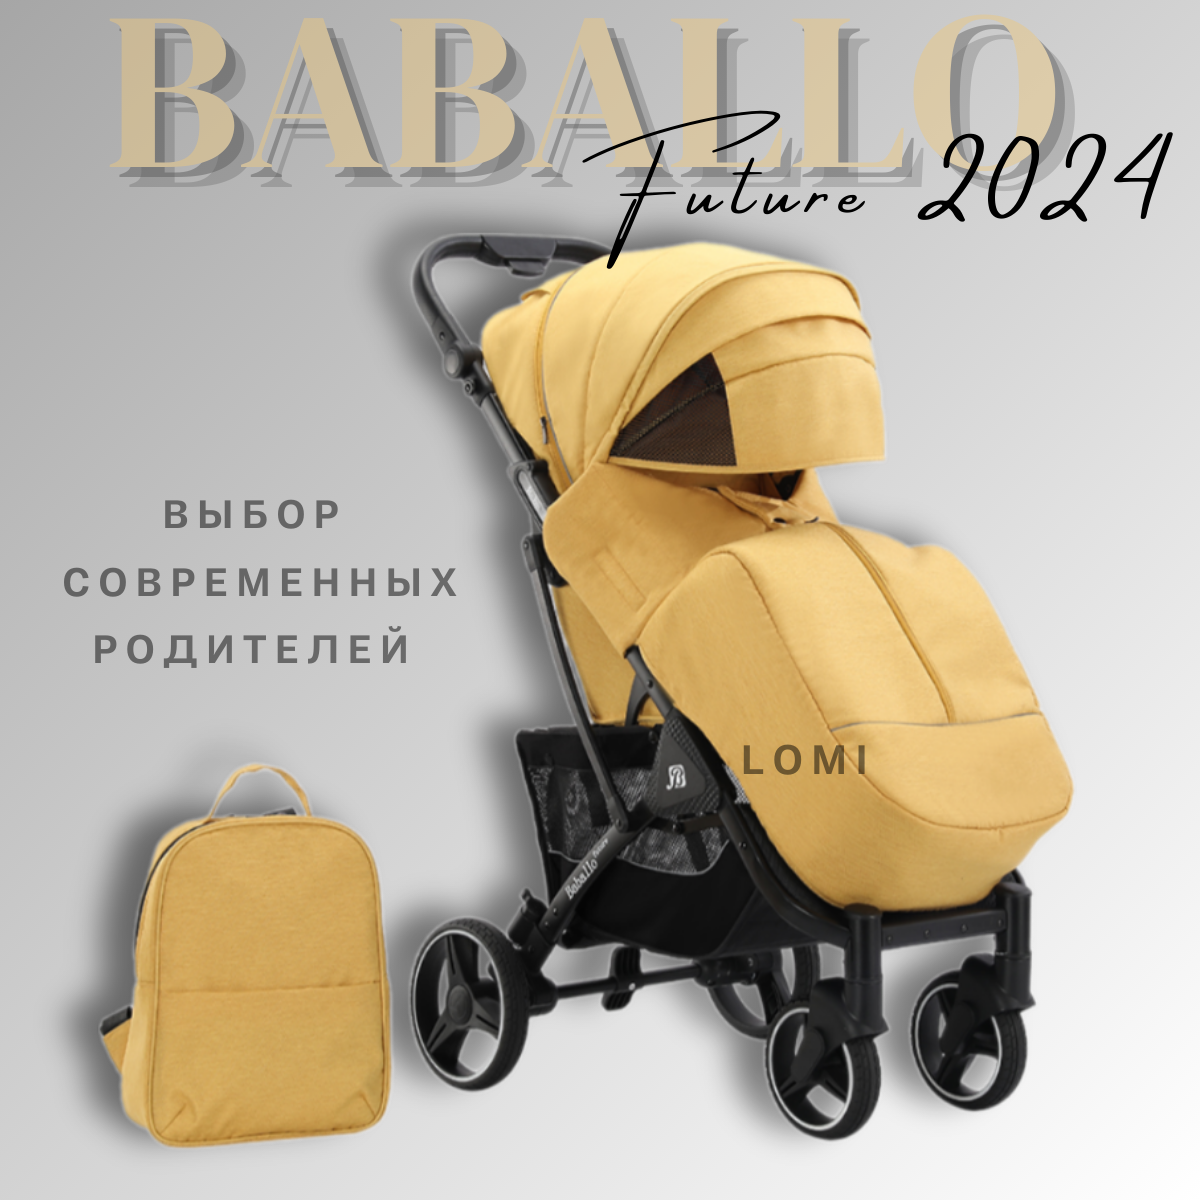 Детская прогулочная коляска Baballo future 2024, Бабало желтый на черной раме, механическая спинка, сумка-рюкзак в комплекте